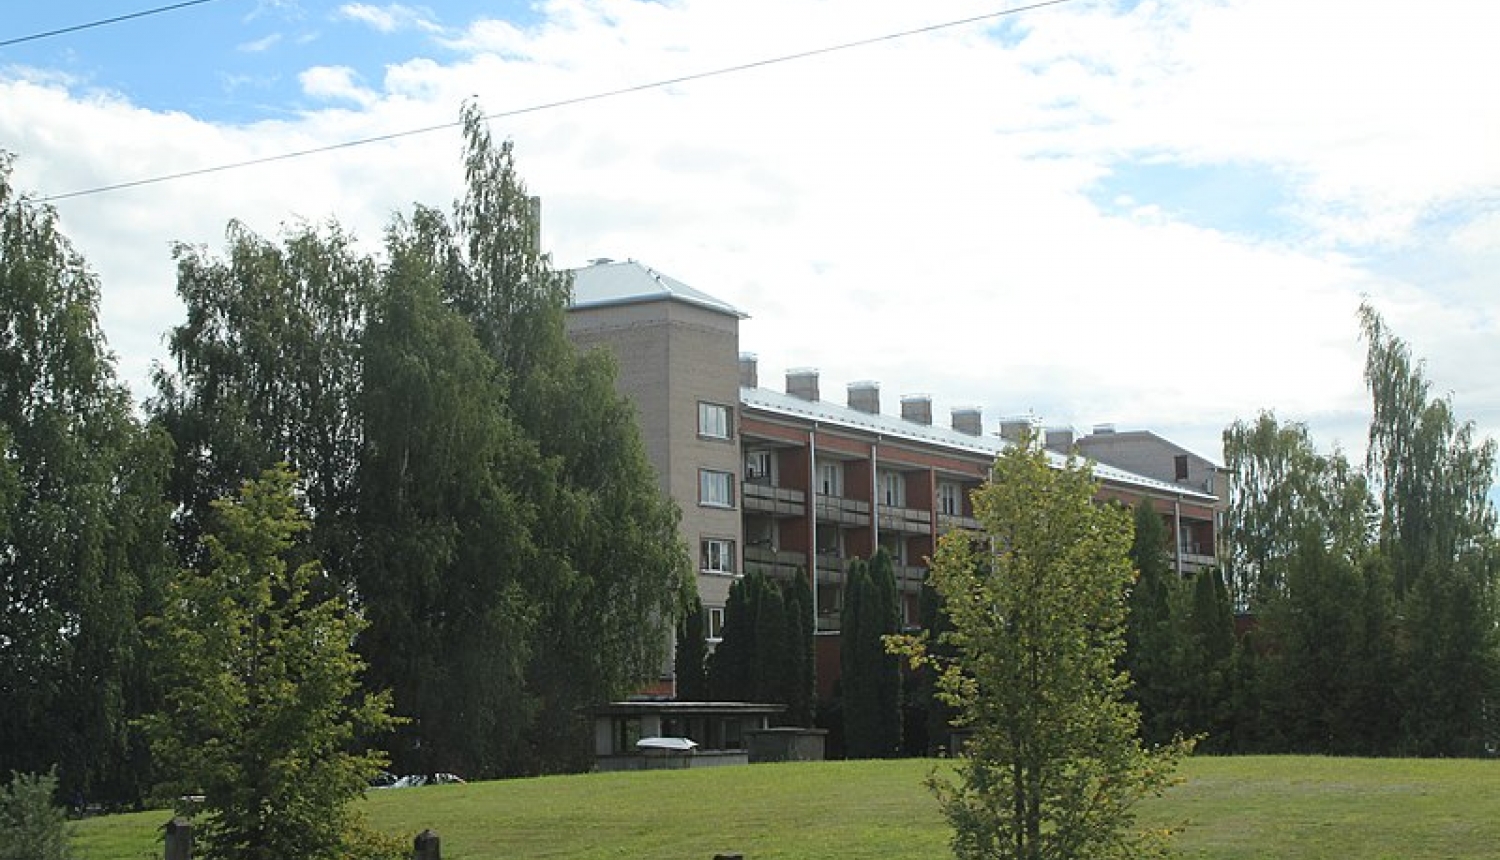 Jēkabpils novada pašvaldības aģentūra „Jaunāmuiža” - daudzstāvu ēka pa gabalu vasarā